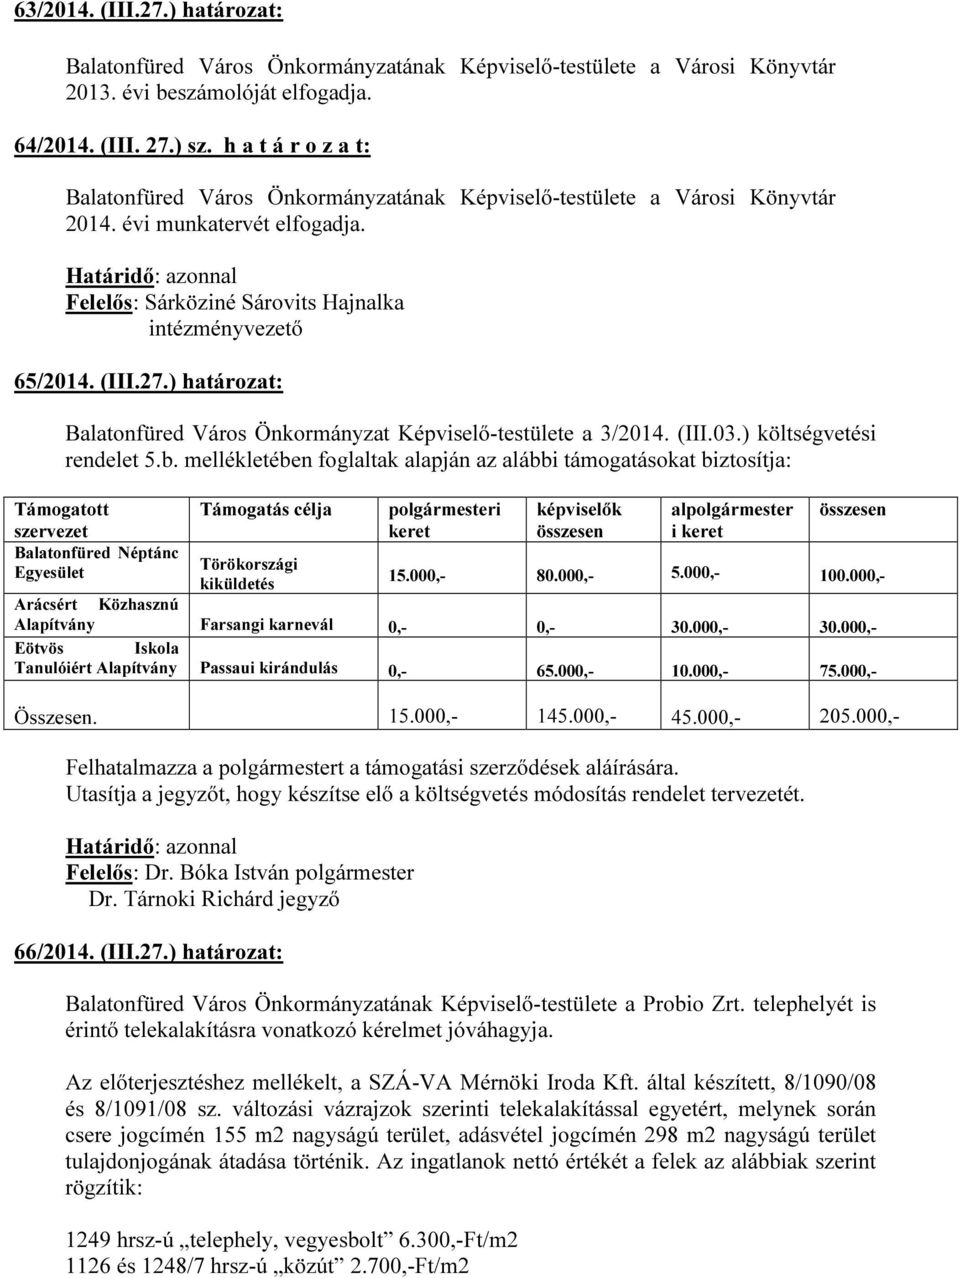 ) határozat: Balatonfüred Város Önkormányzat Képviselő-testülete a 3/2014. (III.03.) költségvetési rendelet 5.b.